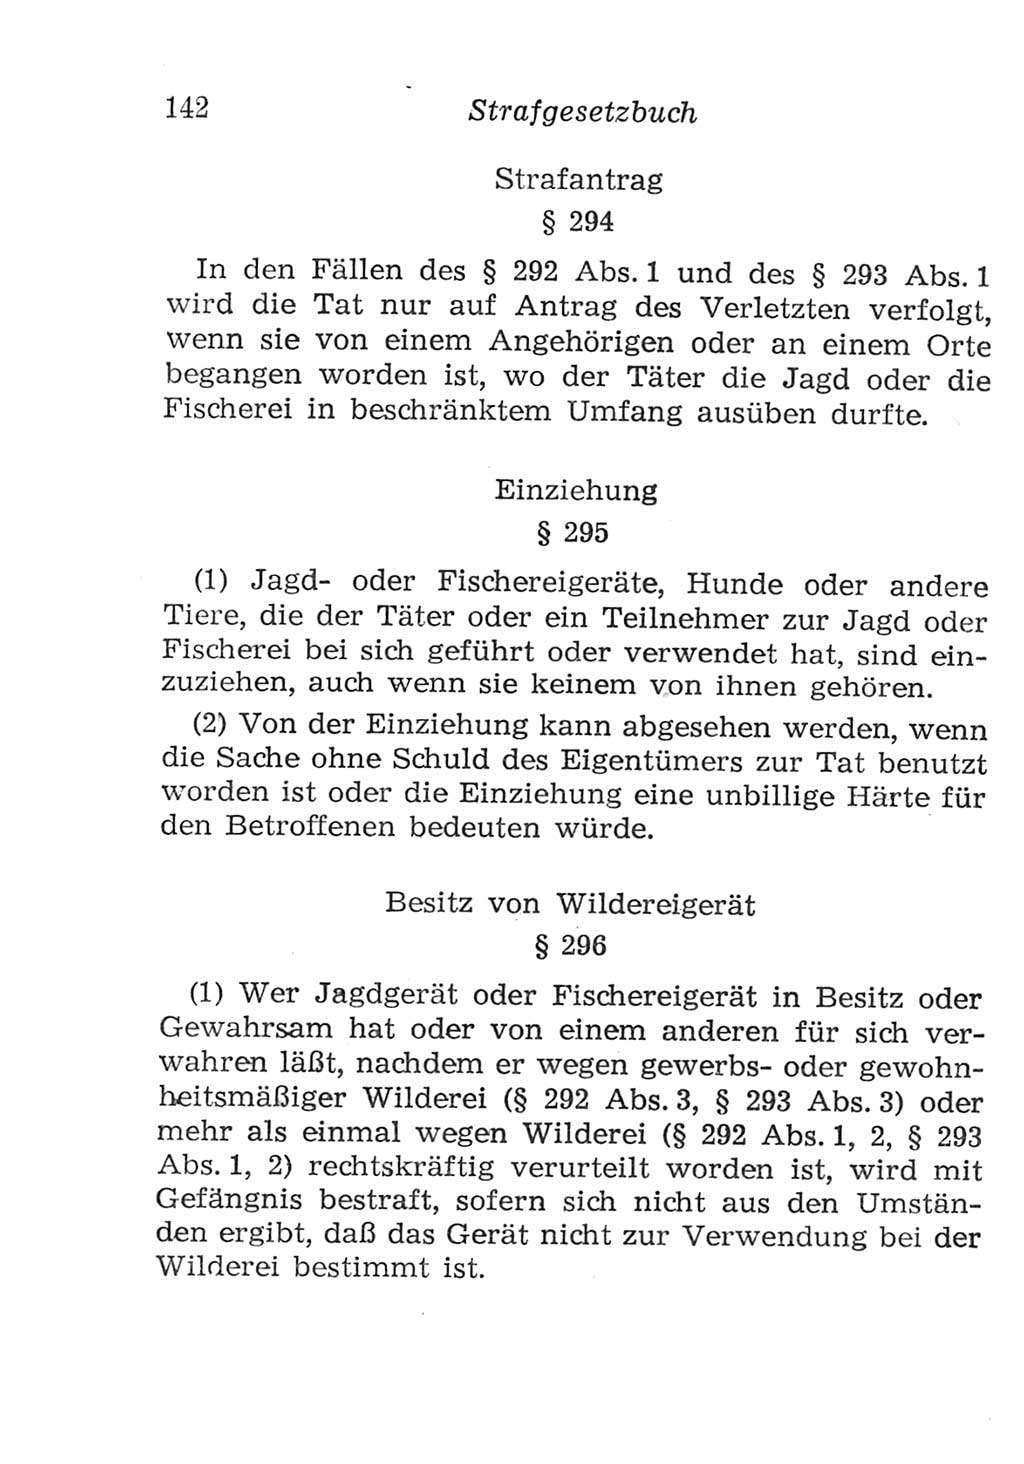 Strafgesetzbuch (StGB) und andere Strafgesetze [Deutsche Demokratische Republik (DDR)] 1957, Seite 142 (StGB Strafges. DDR 1957, S. 142)